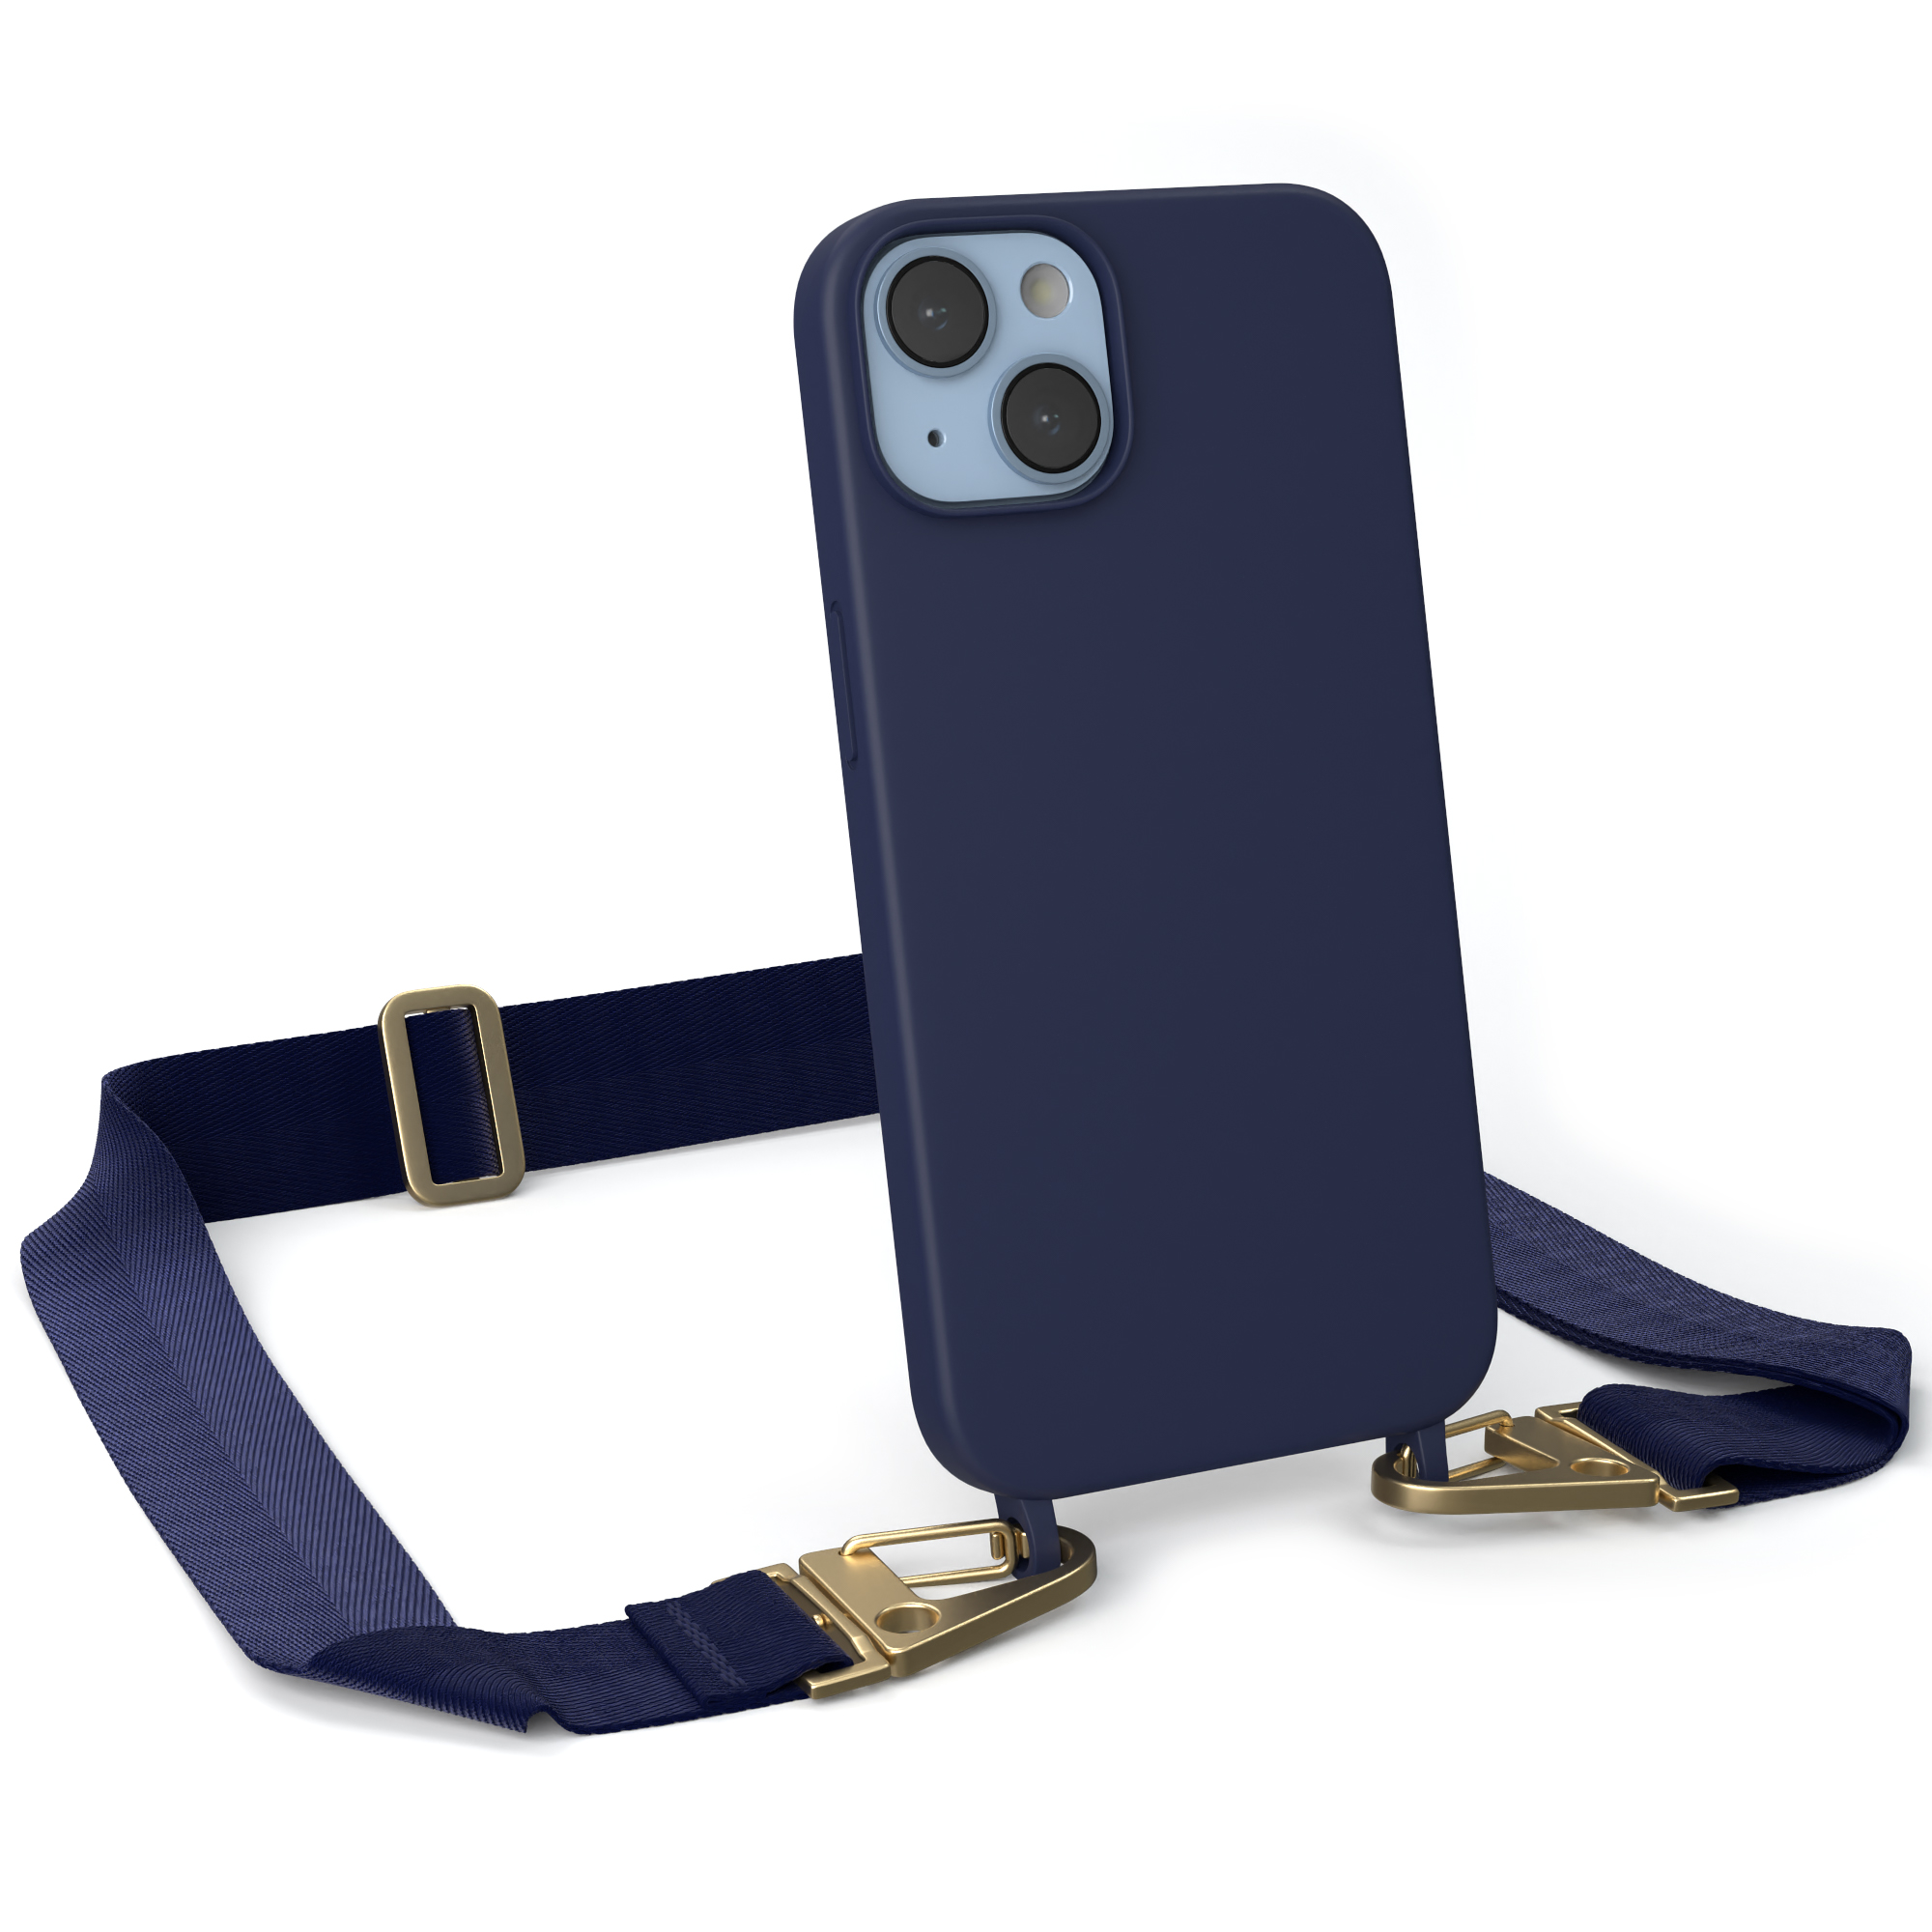 14, Gold Apple, Breit Handy Karabiner / iPhone mit Dunkel Silikon Hülle, EAZY Premium Blau CASE Kette Umhängetasche,